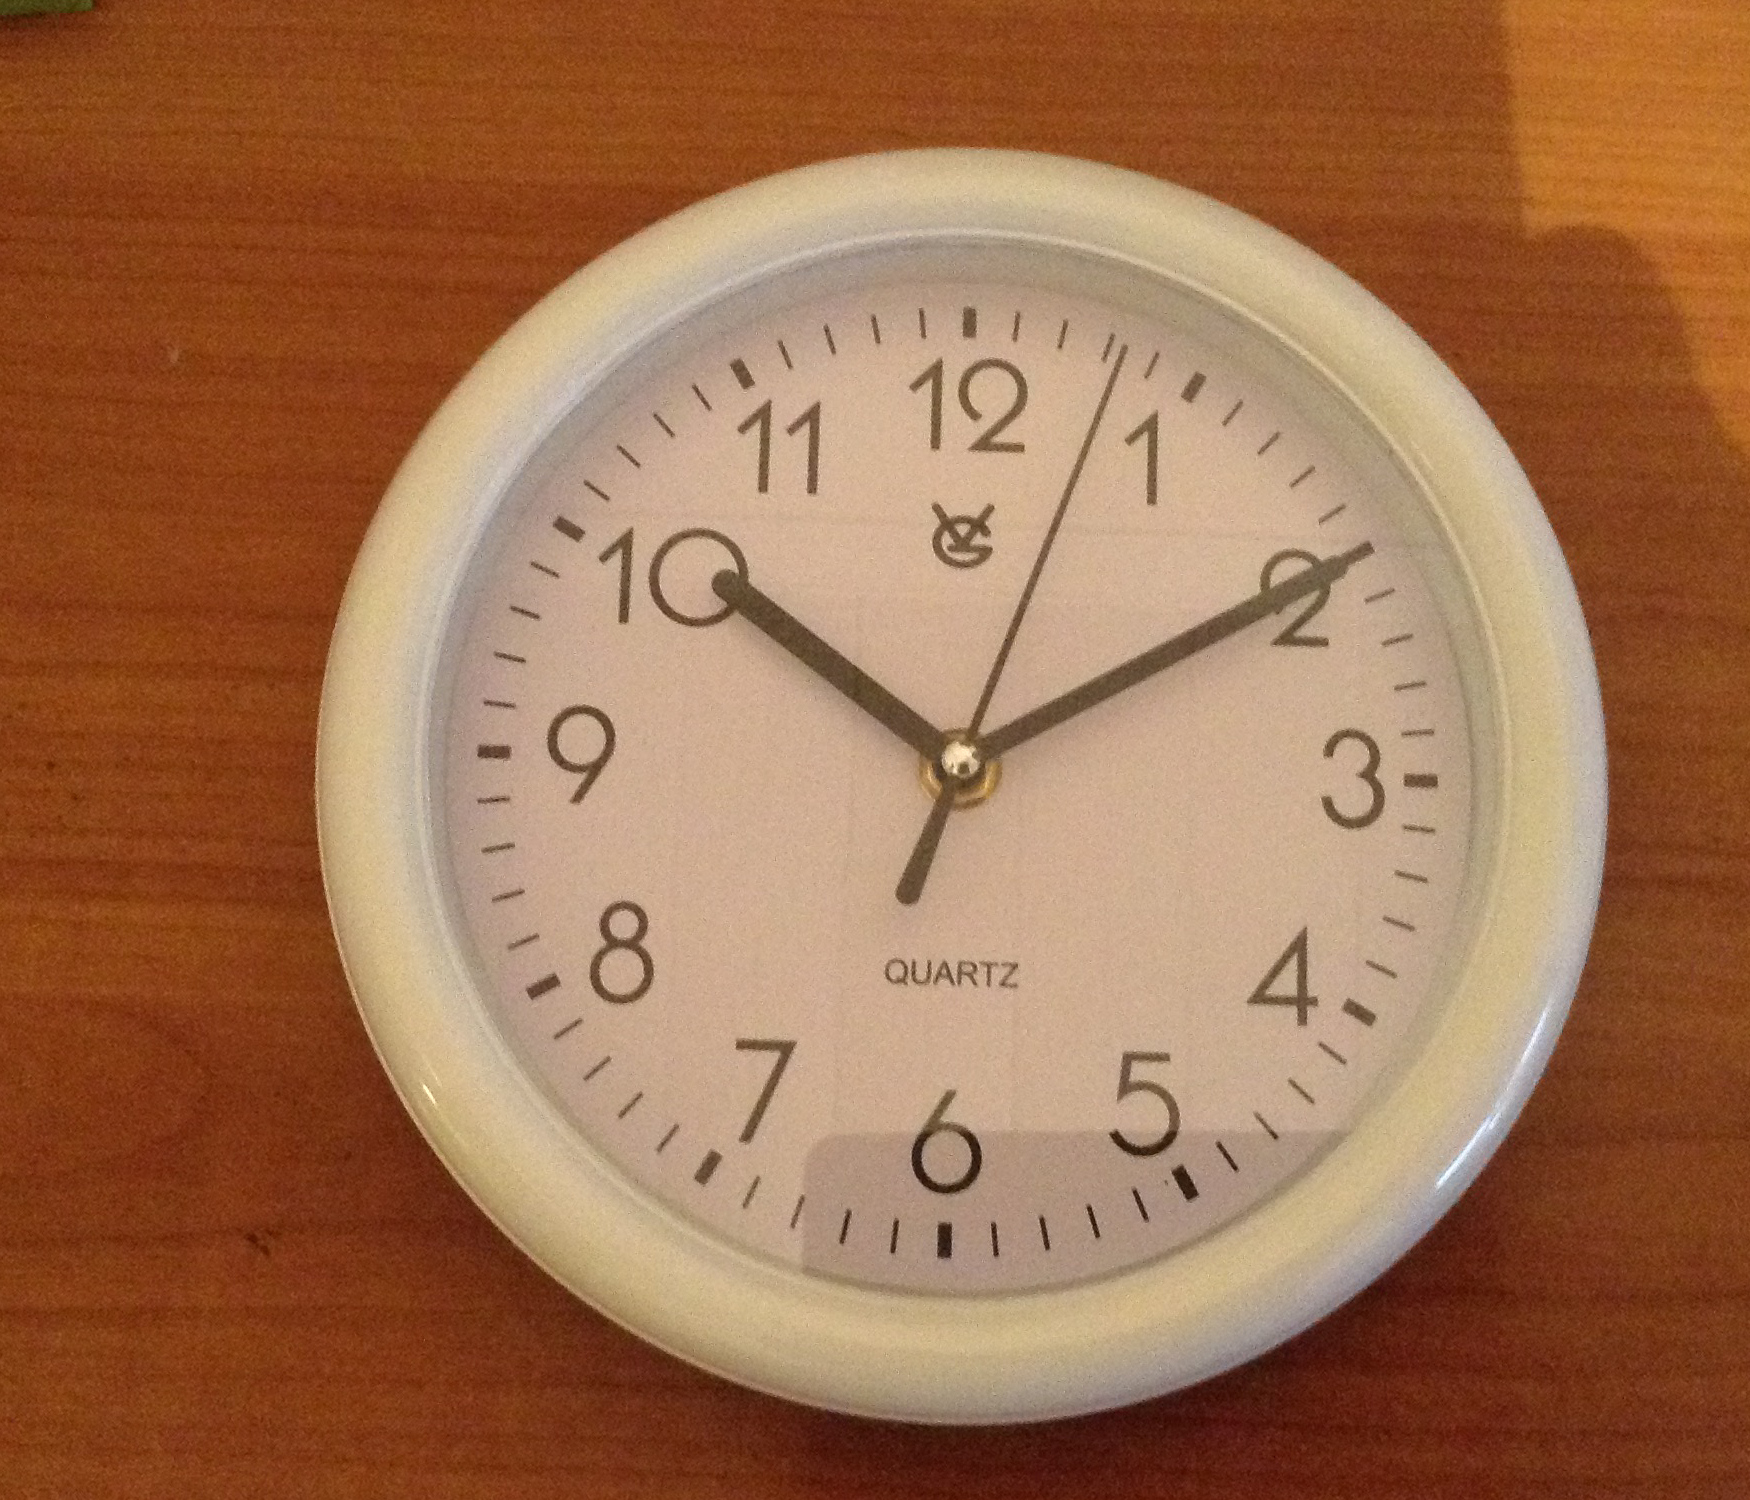 1: The original 12-hour clock